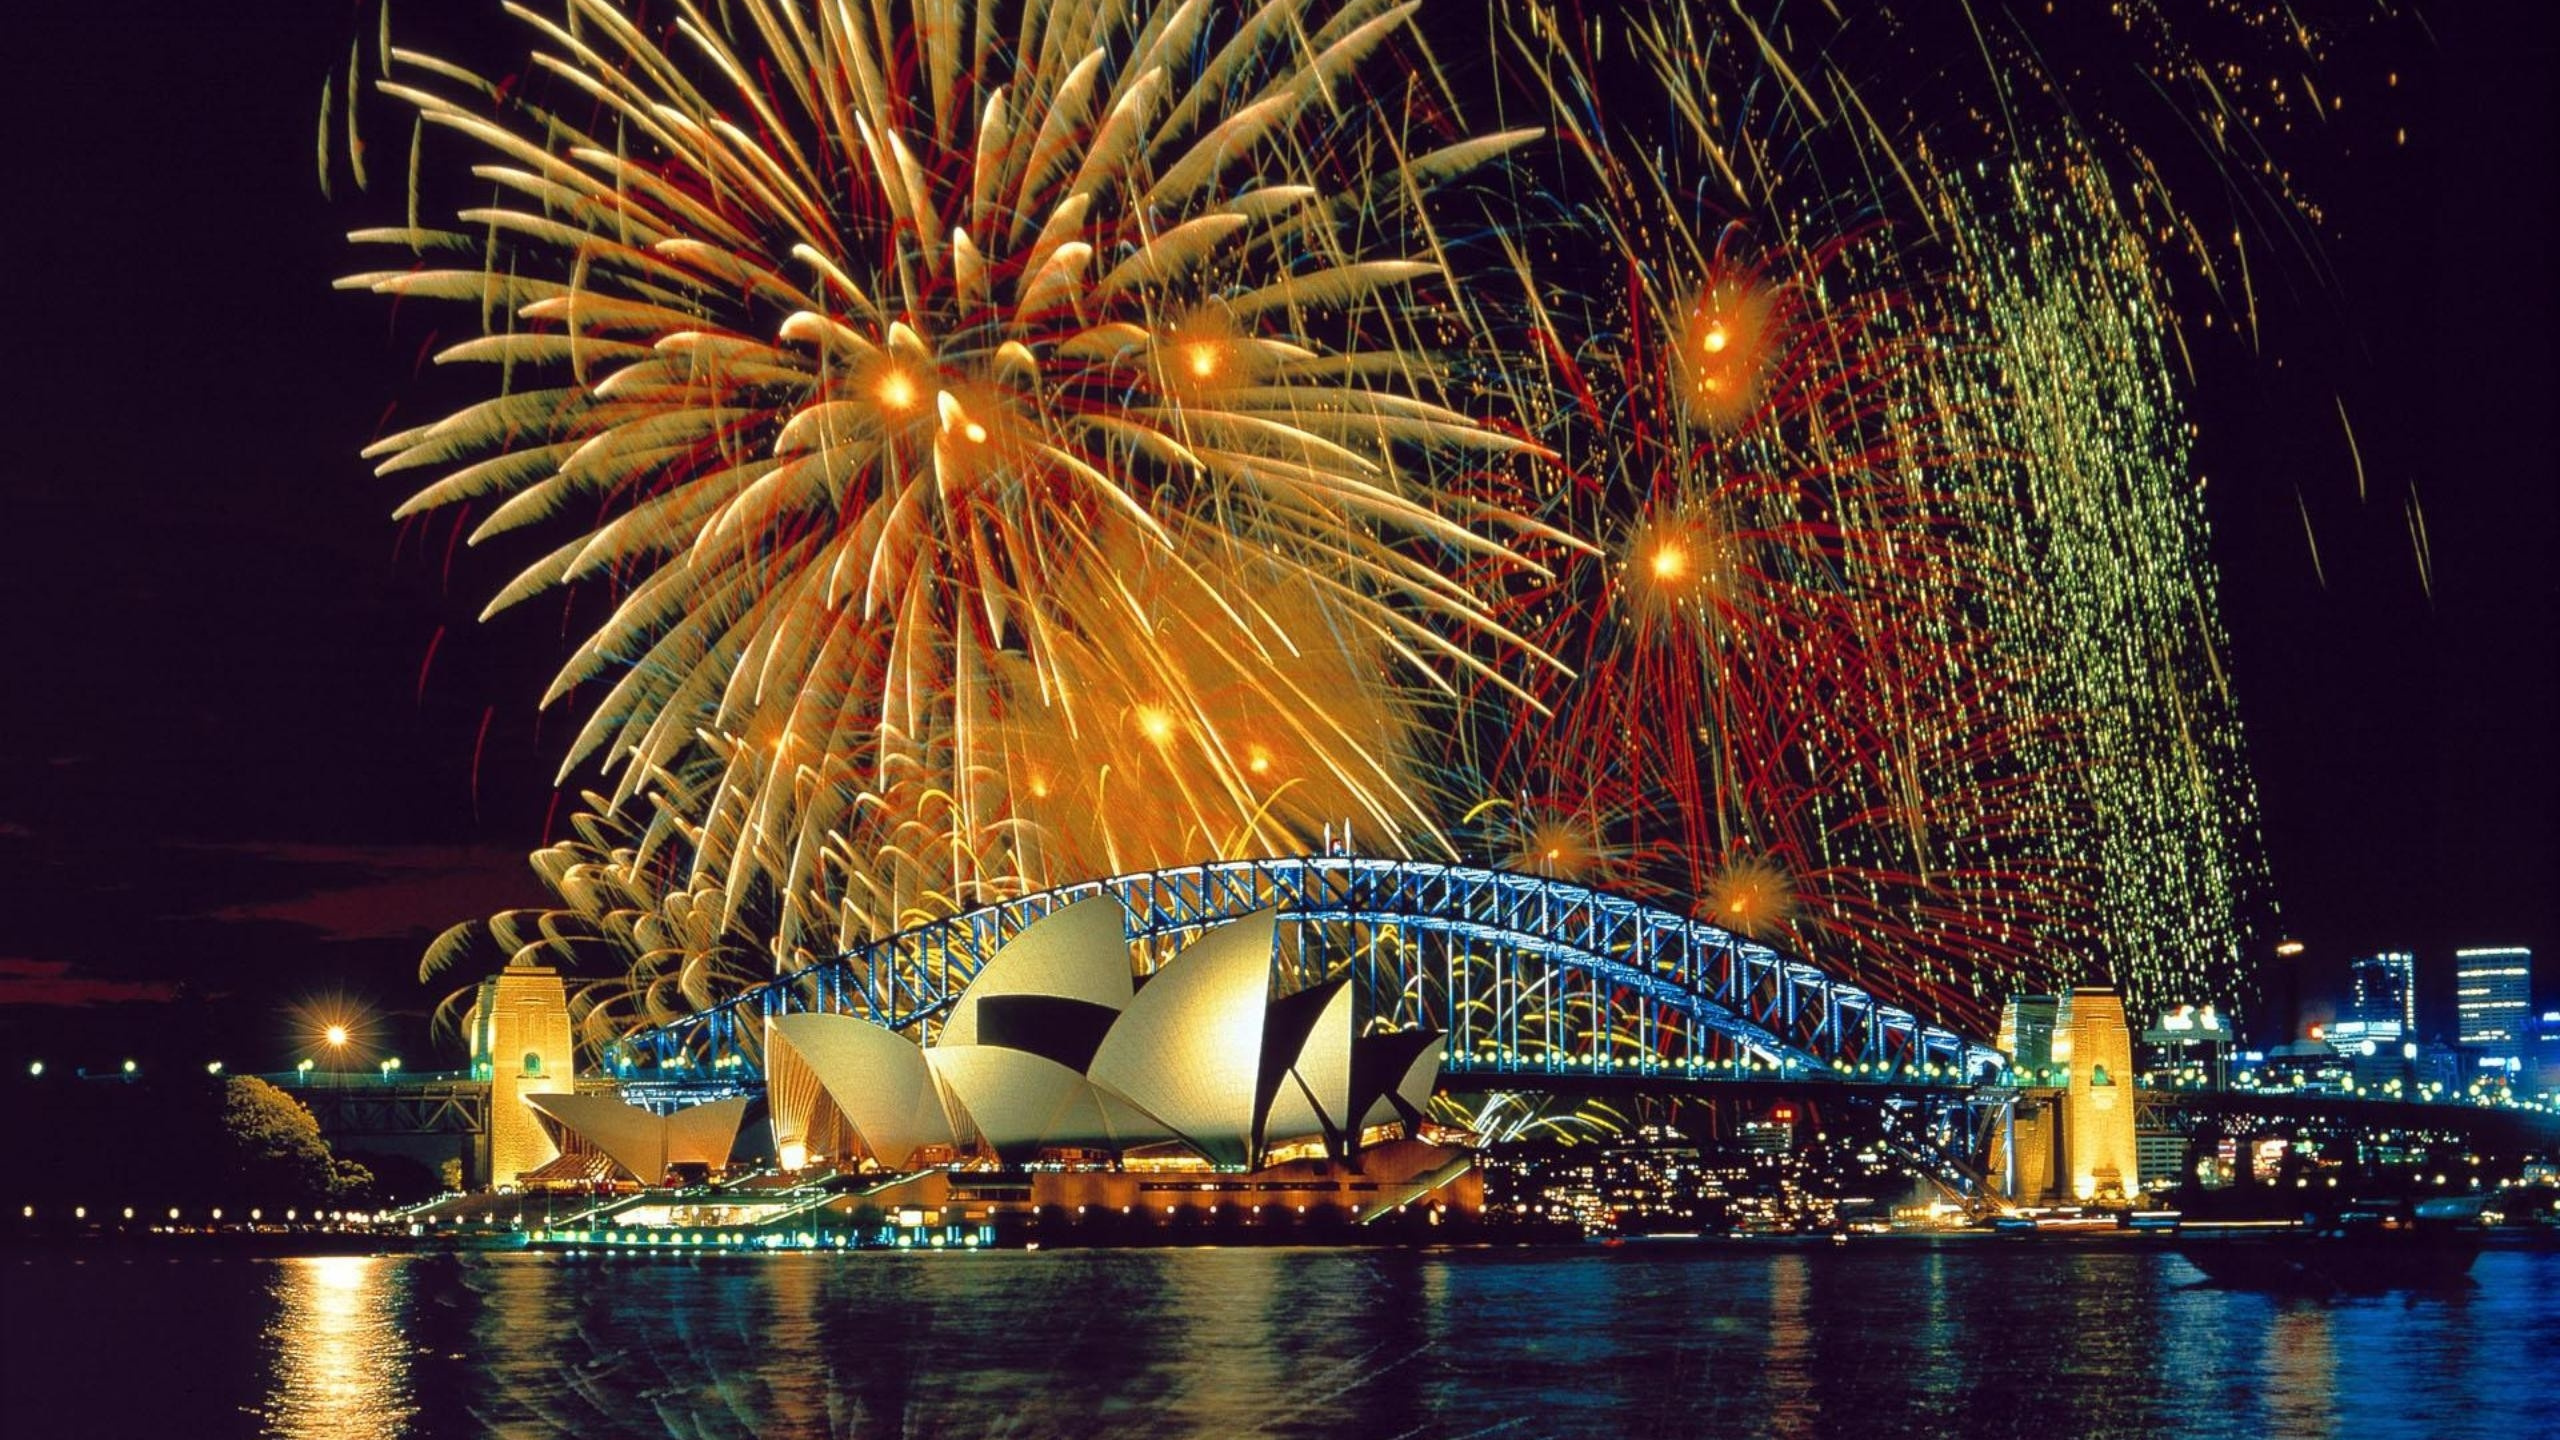 烟花, 反射, 城市景观, 悉尼, 节日 壁纸 2560x1440 允许